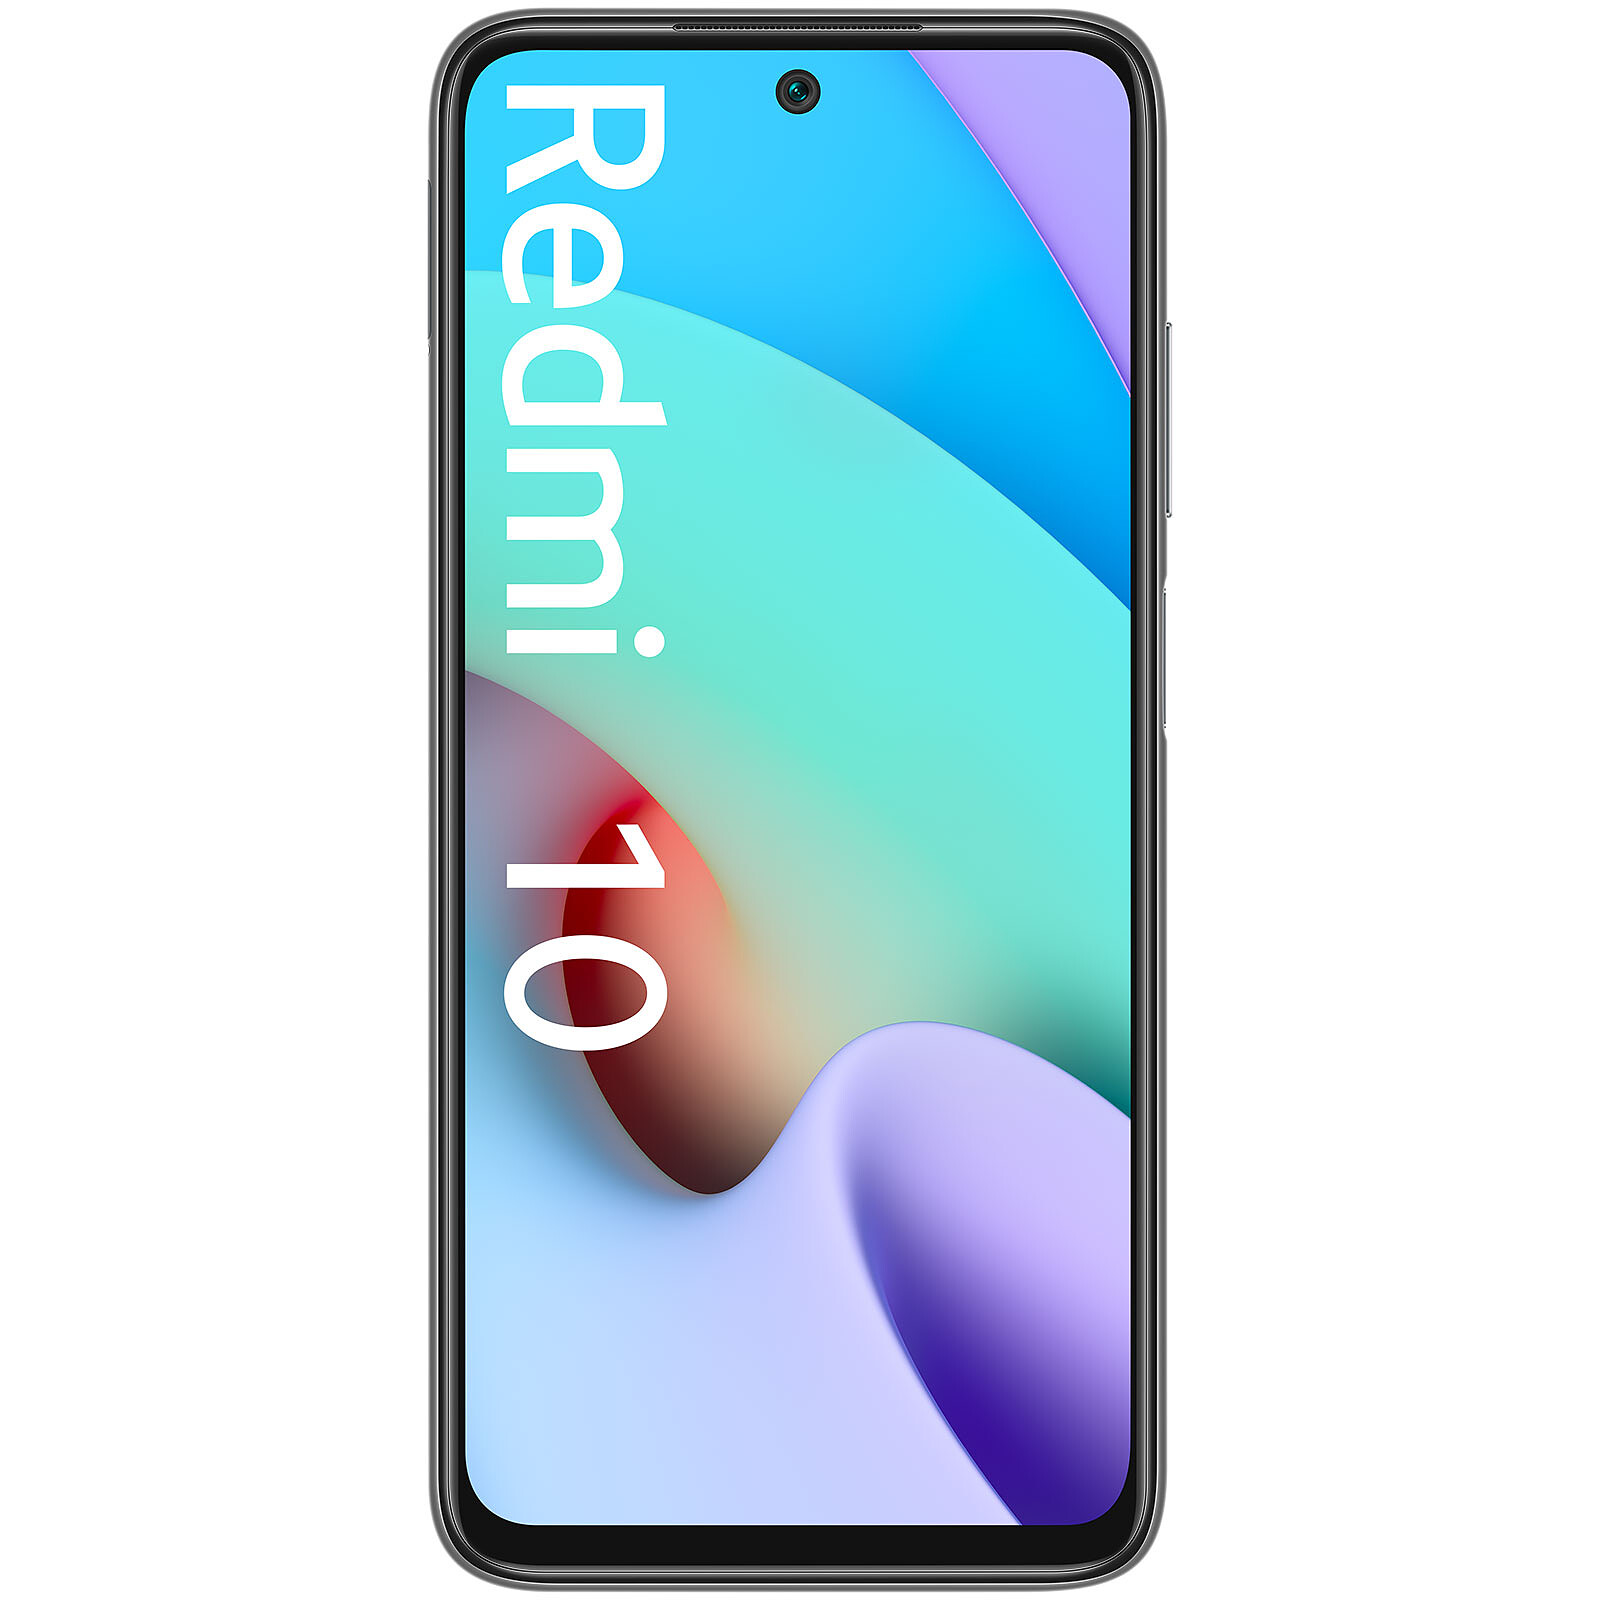 Xiaomi Redmi 10 5G - Gris - 64 GB de capacidad